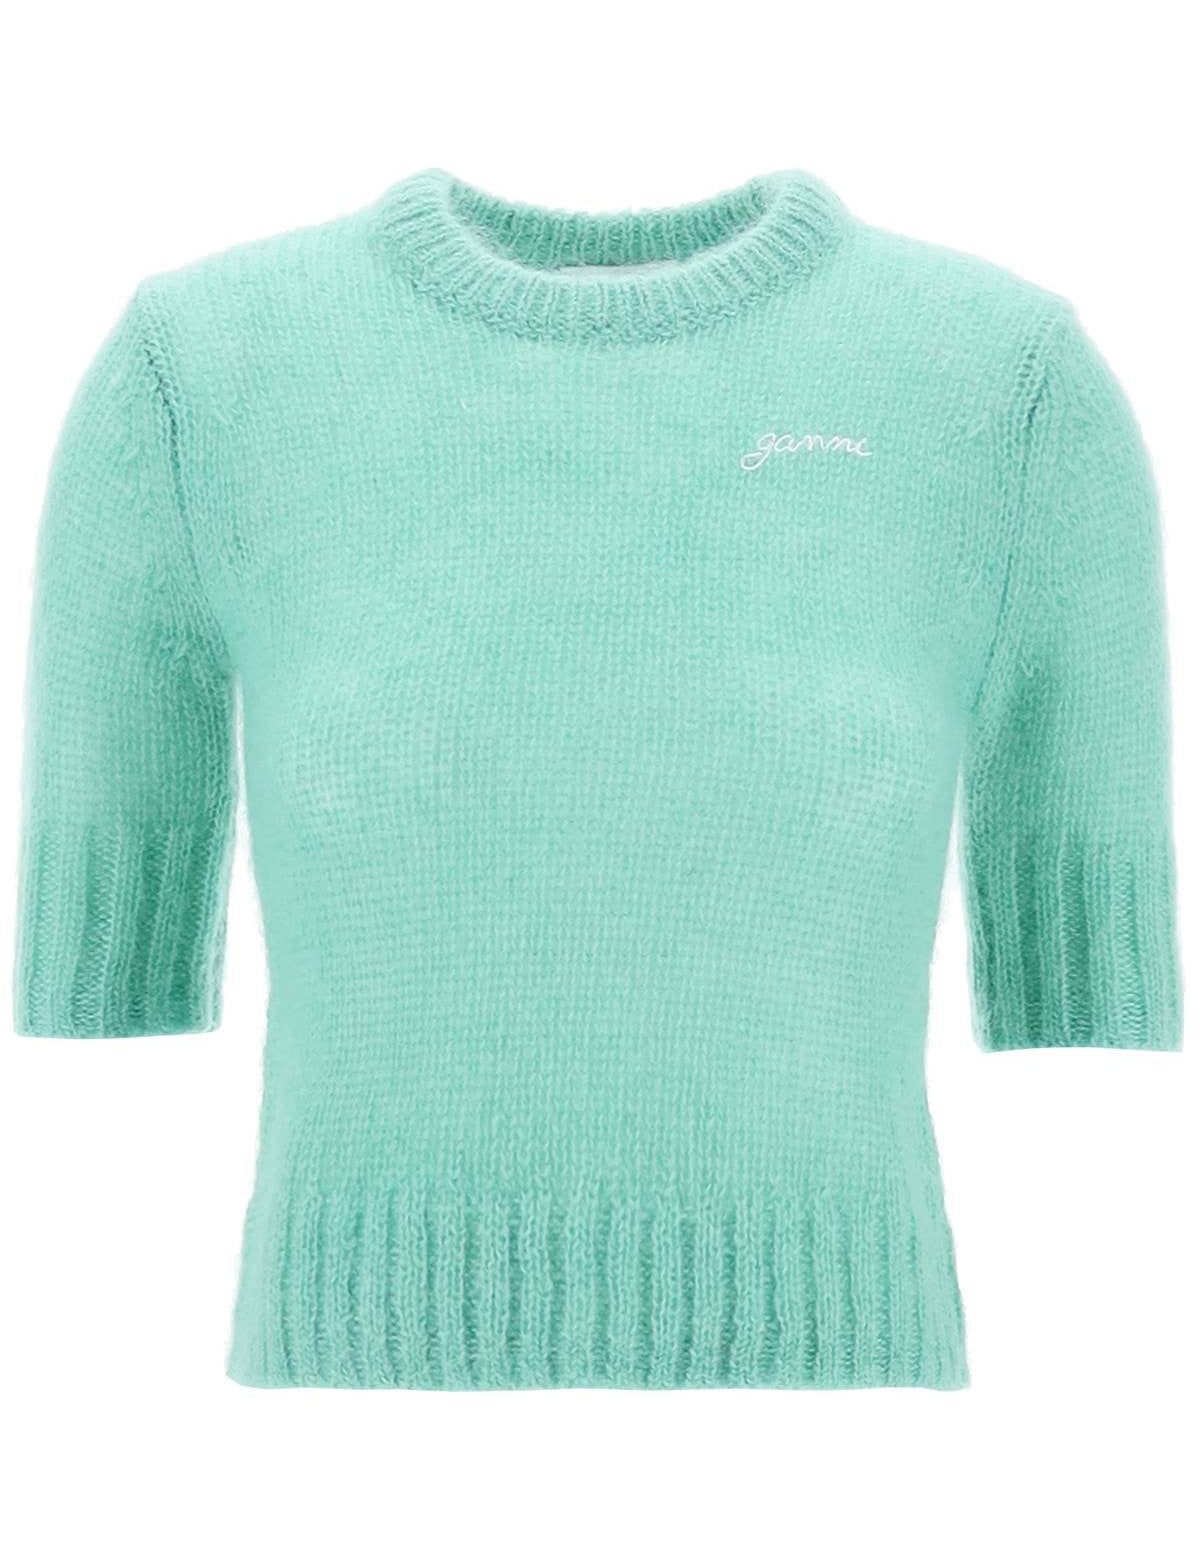 ganni-mohair-pullover-sweater_5b4a490c-5ece-4c7a-adb9-71f488c2bfbd.jpg